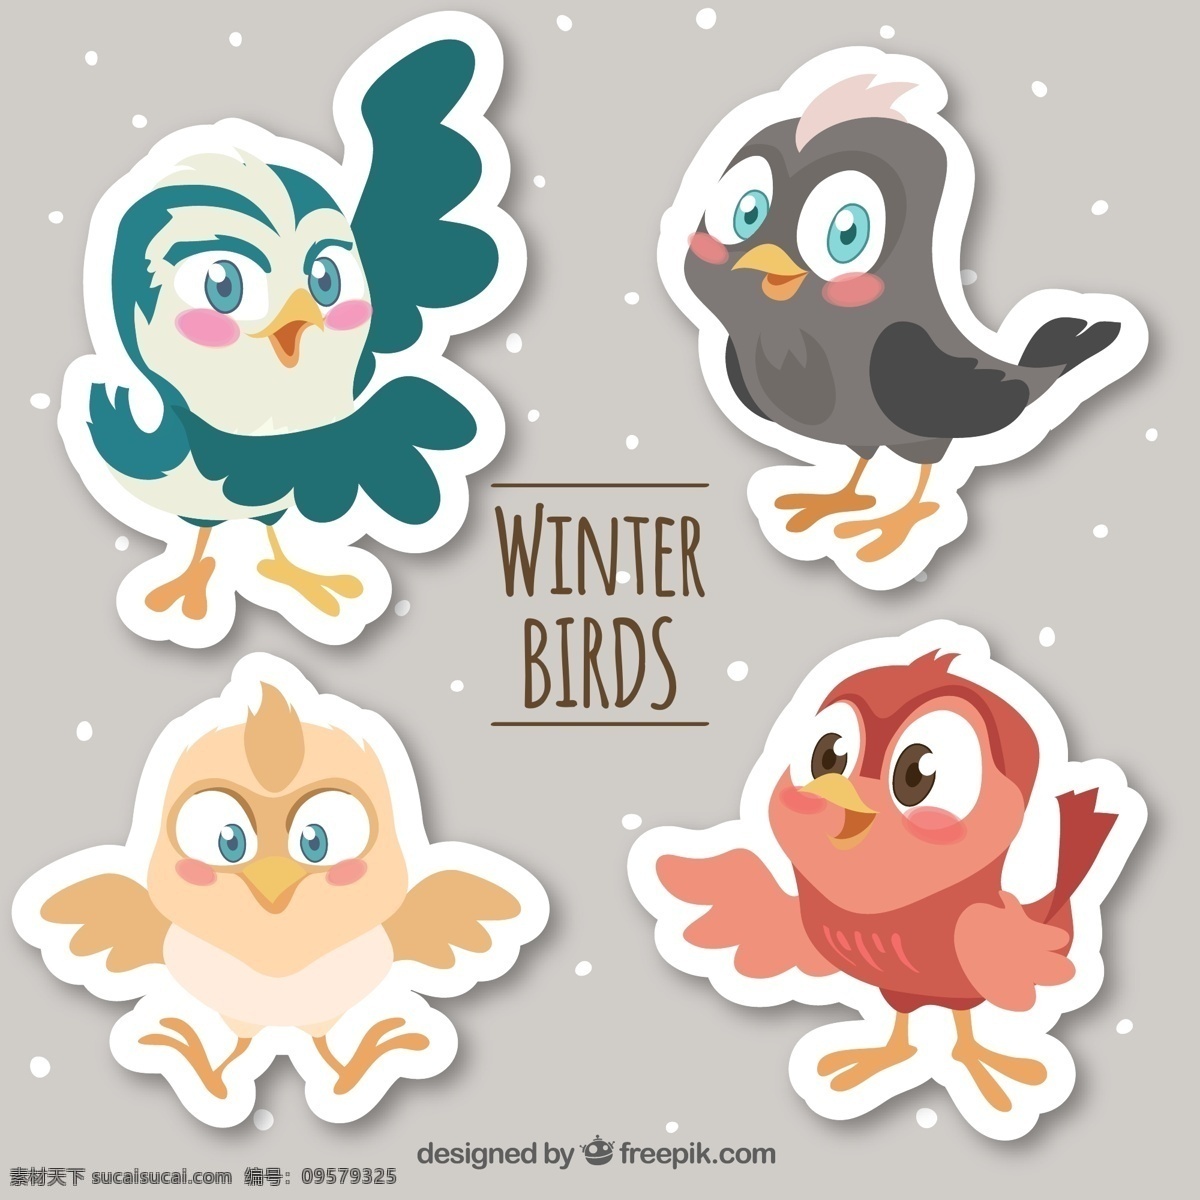 款 卡通 冬季 小鸟 贴纸 矢量图 雪花 动物 鸟 ai格式 矢量素材 最新矢量图 名片卡片